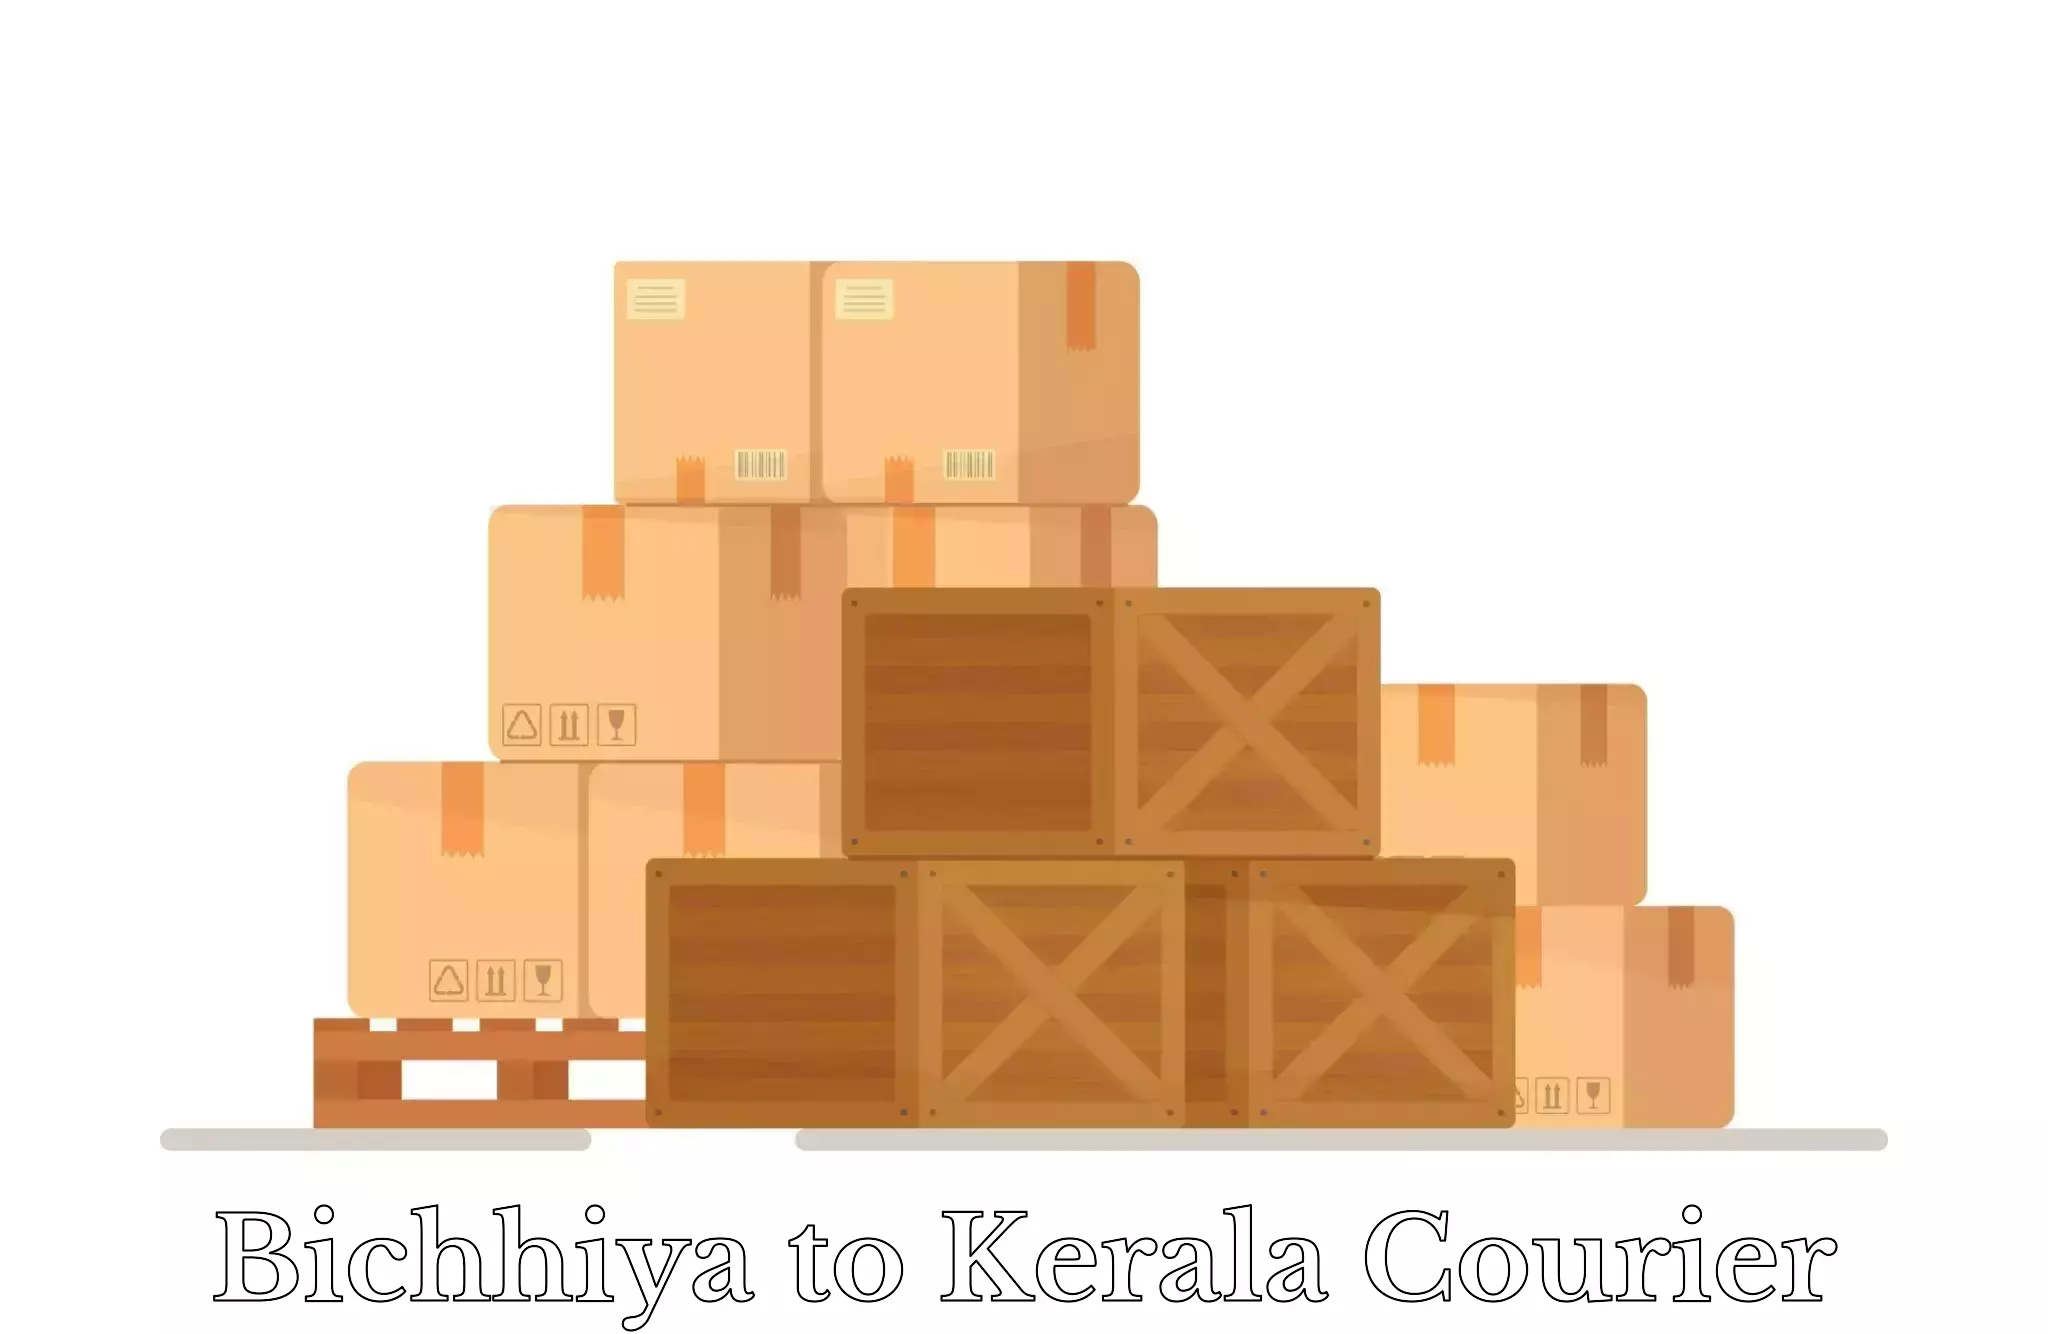 Luggage shipping options Bichhiya to Kerala